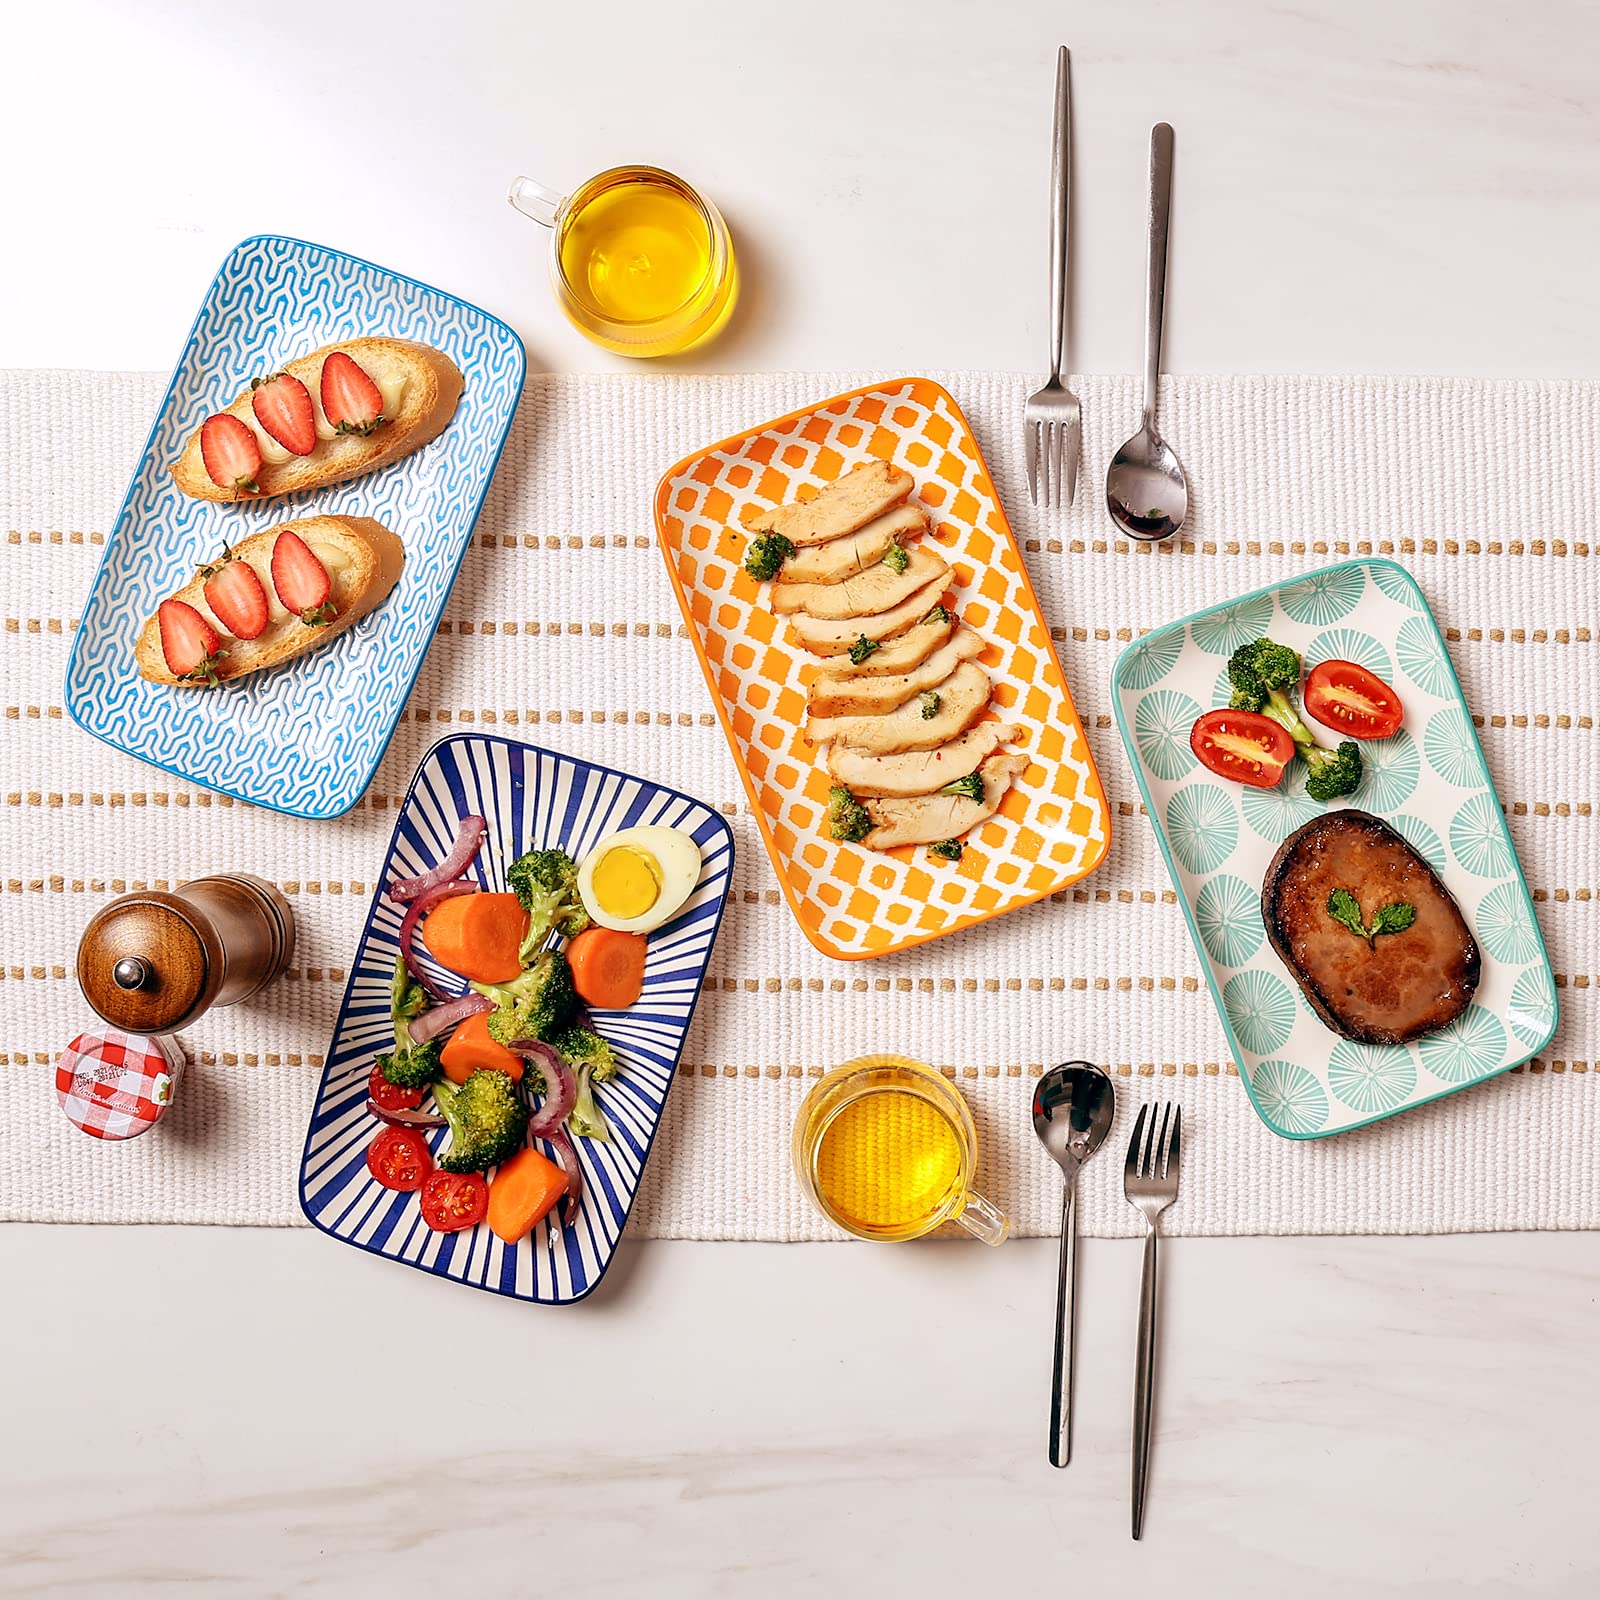 KitchenTour Rectangular Serving Platter, 9.5 inch Appetizer Plates Ceramic Dinner Plates Serving Trays Set of 6 for Salad, Sushi, Fruit, Microwave and Dishwasher Safe